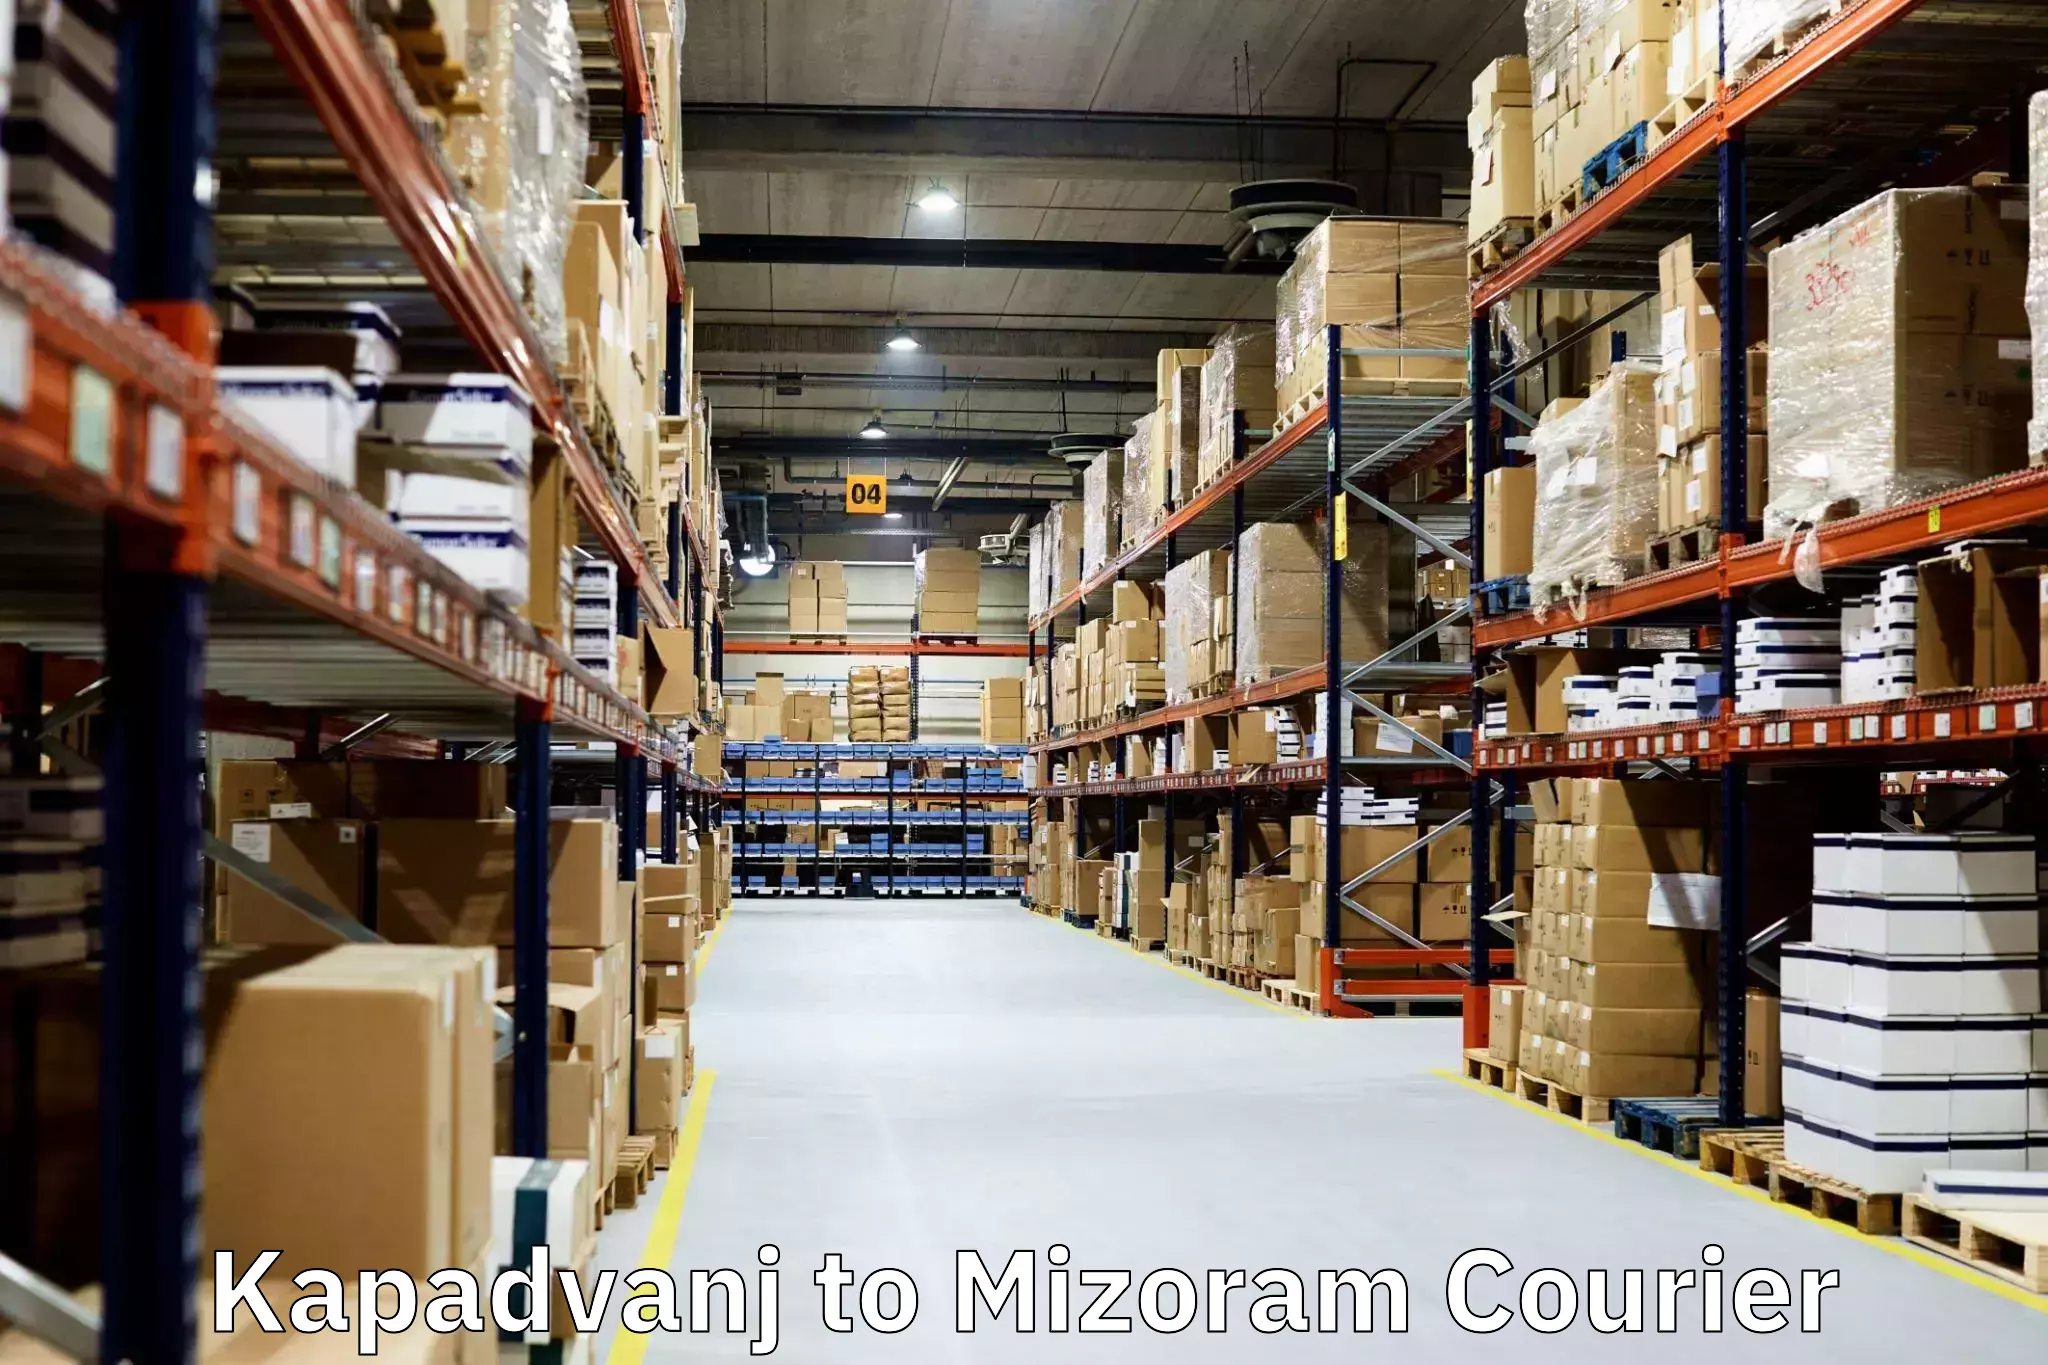 Furniture transport and logistics Kapadvanj to NIT Aizawl